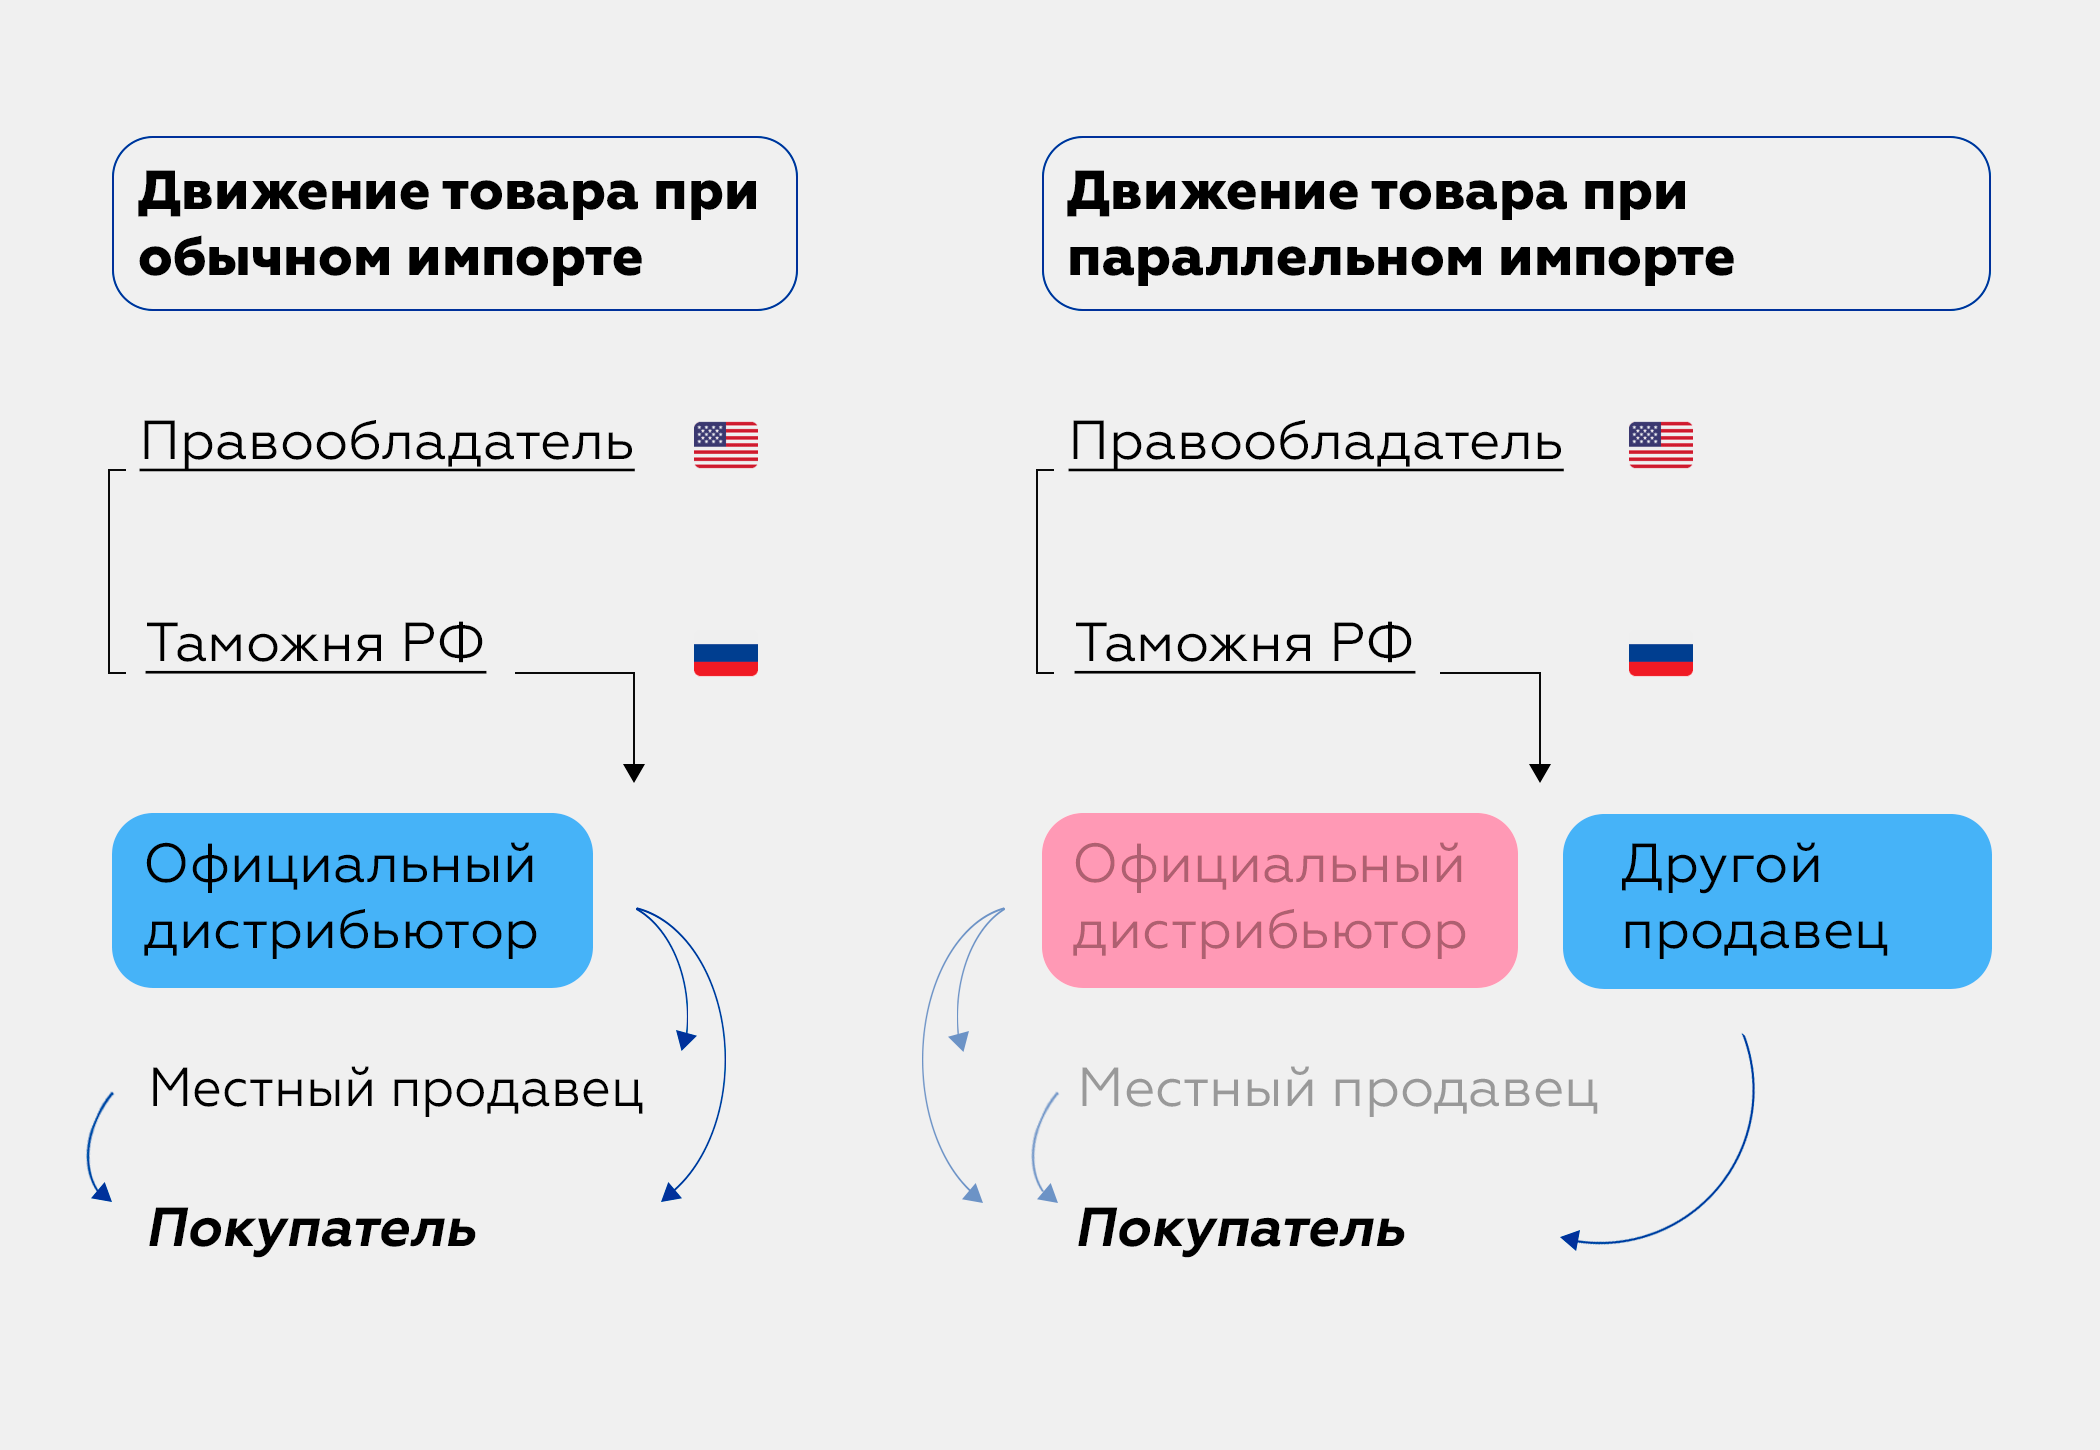 Параллельный импорт в России — простыми словами